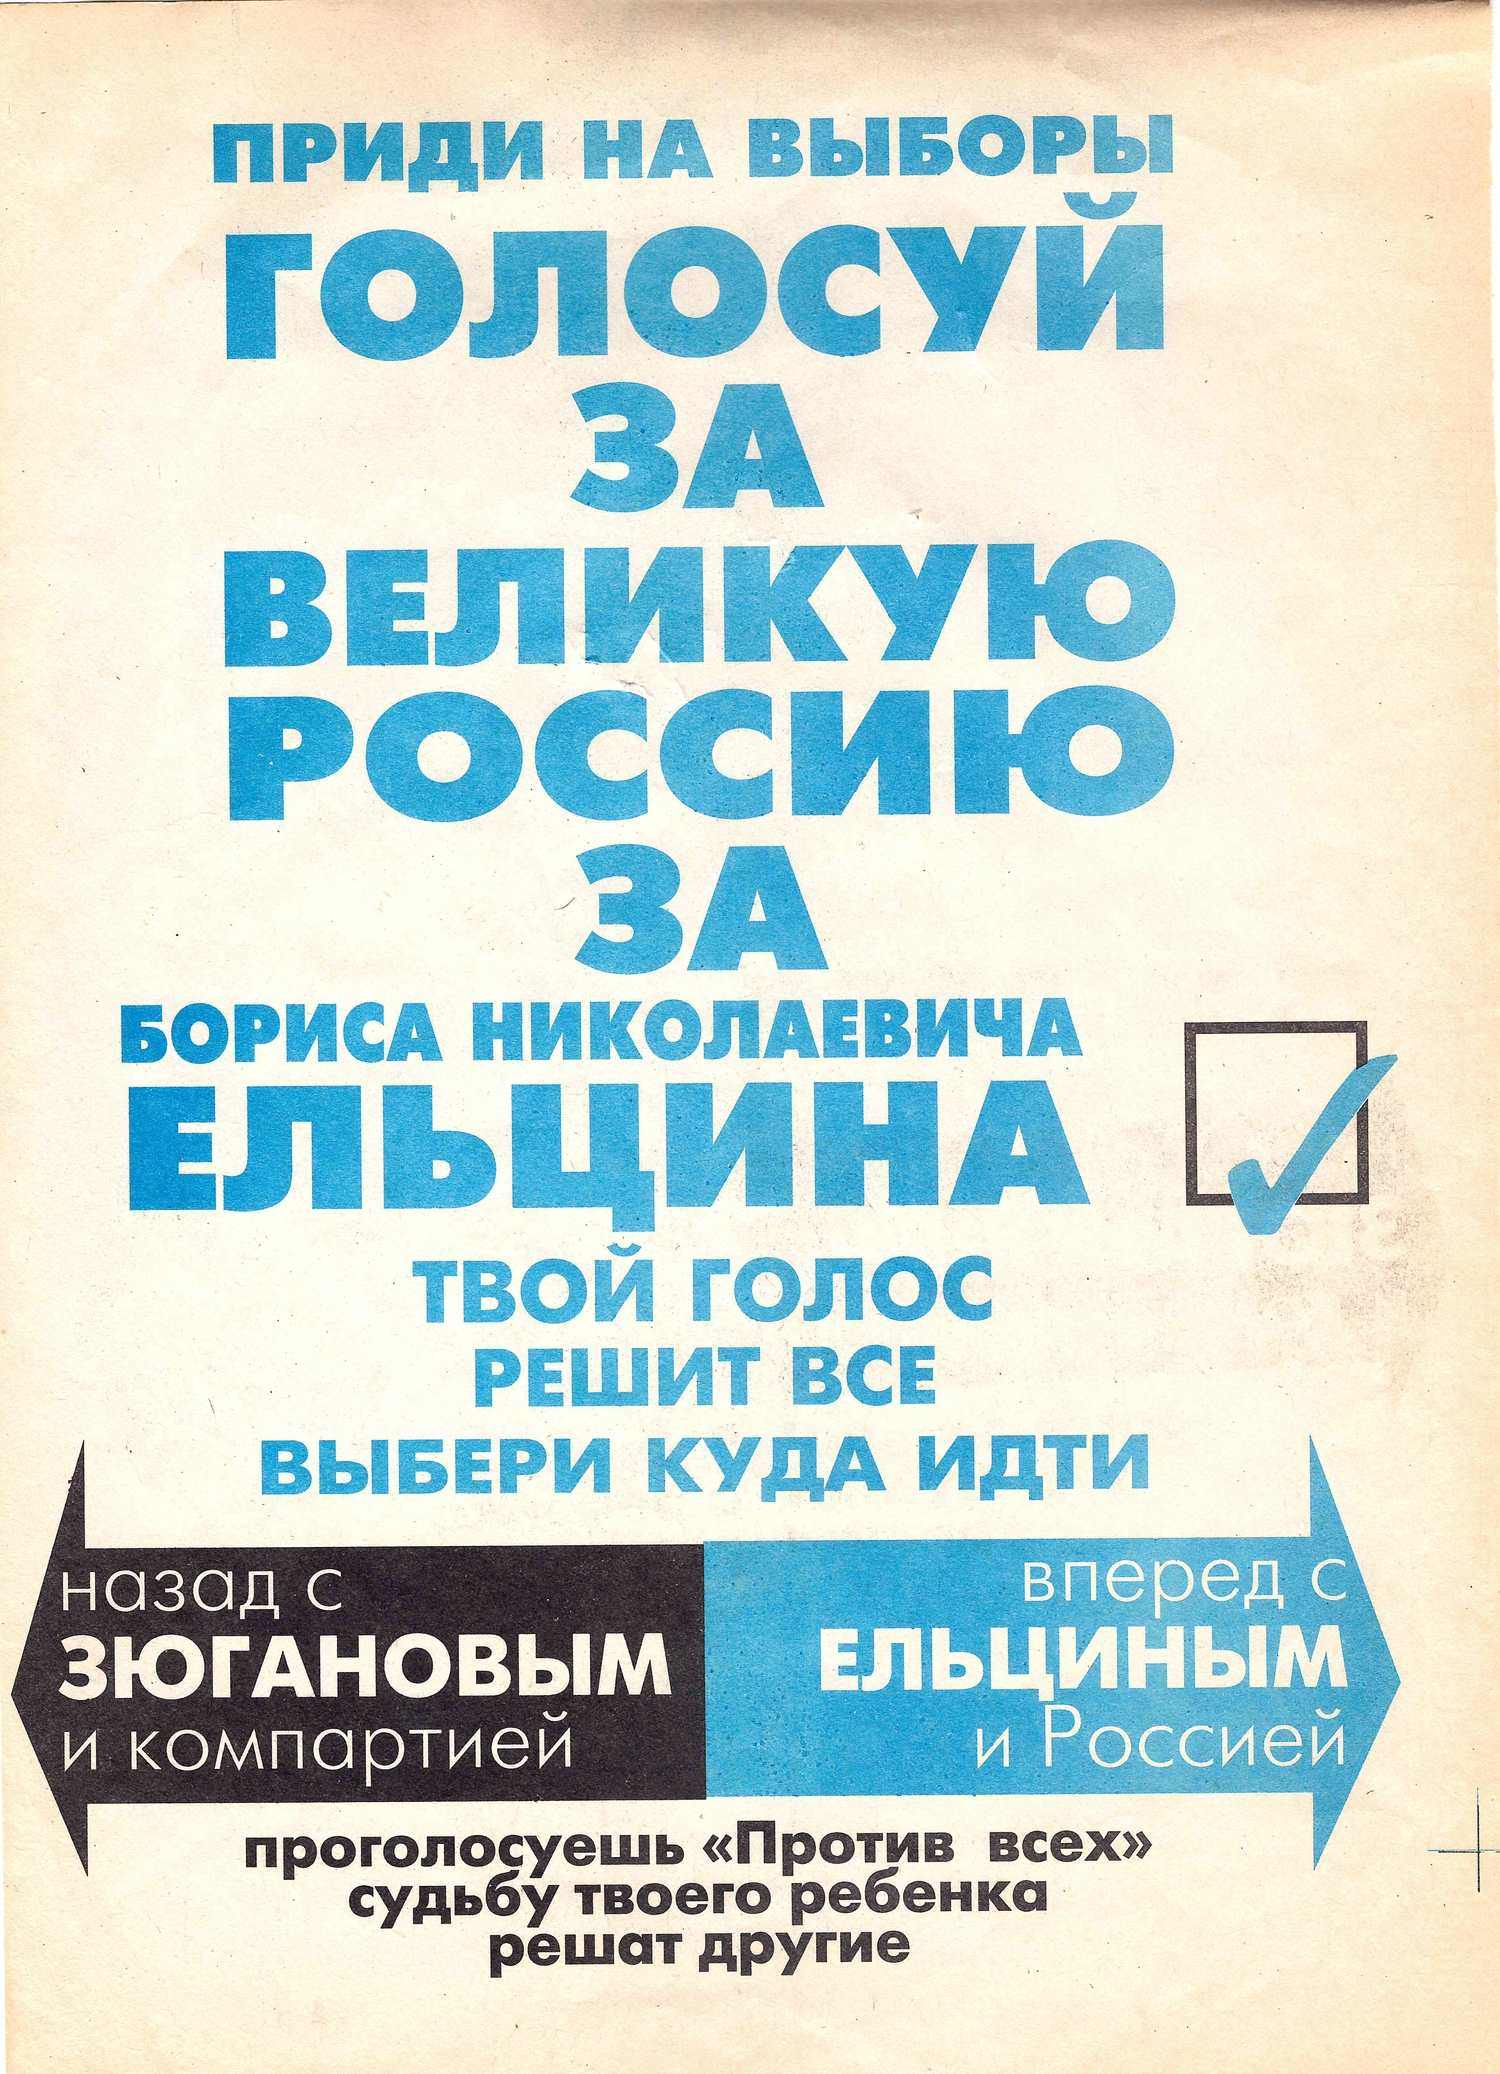 Агитационная листовка в поддержку Б.Н. Ельцина на выборах президента России в 1996 году.